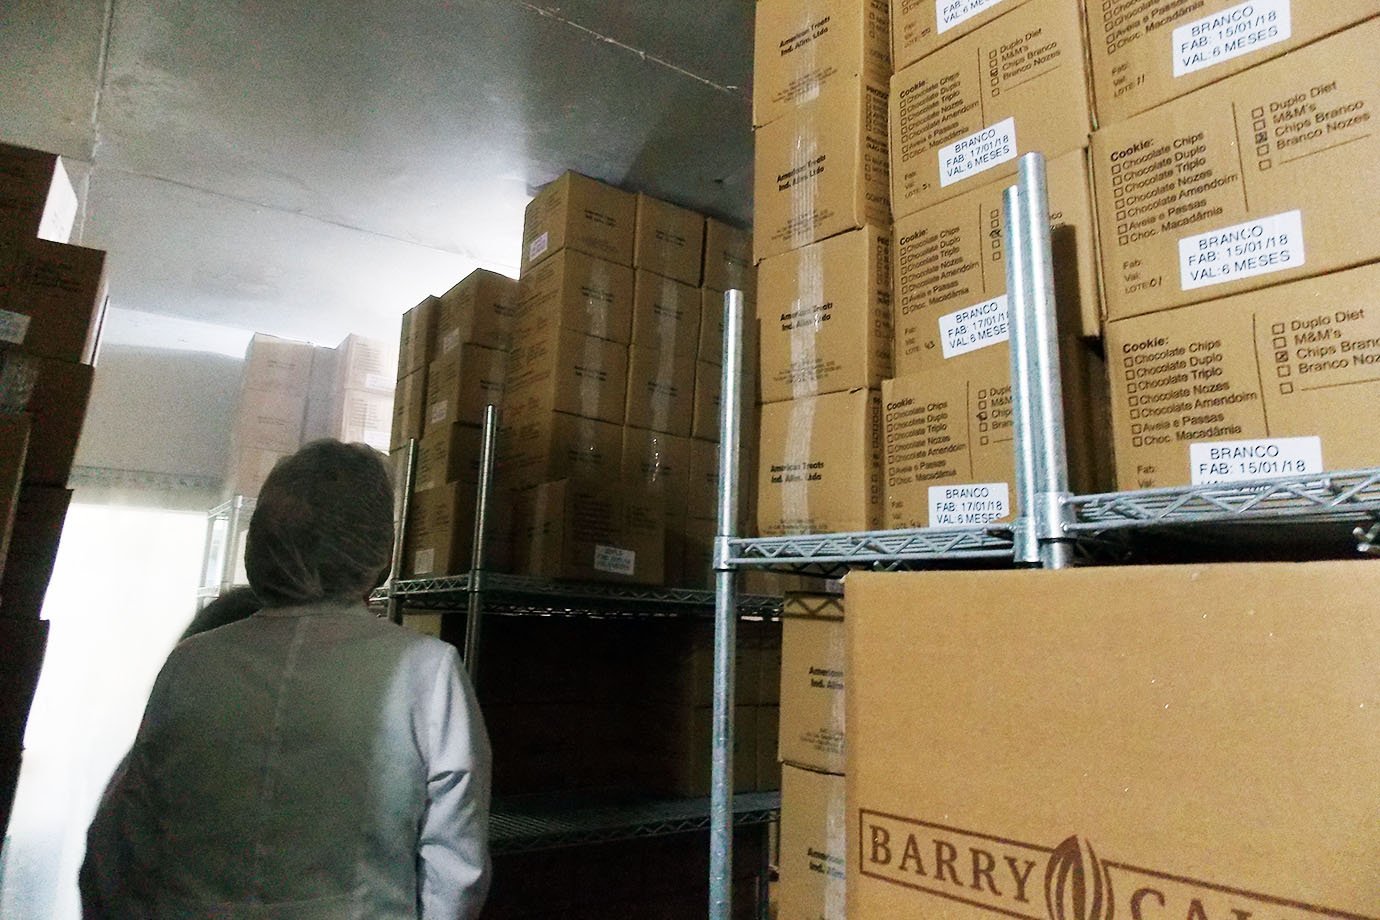 Em câmara fria, caixas com cookies da Mr. Cheney, na fábrica em São Paulo